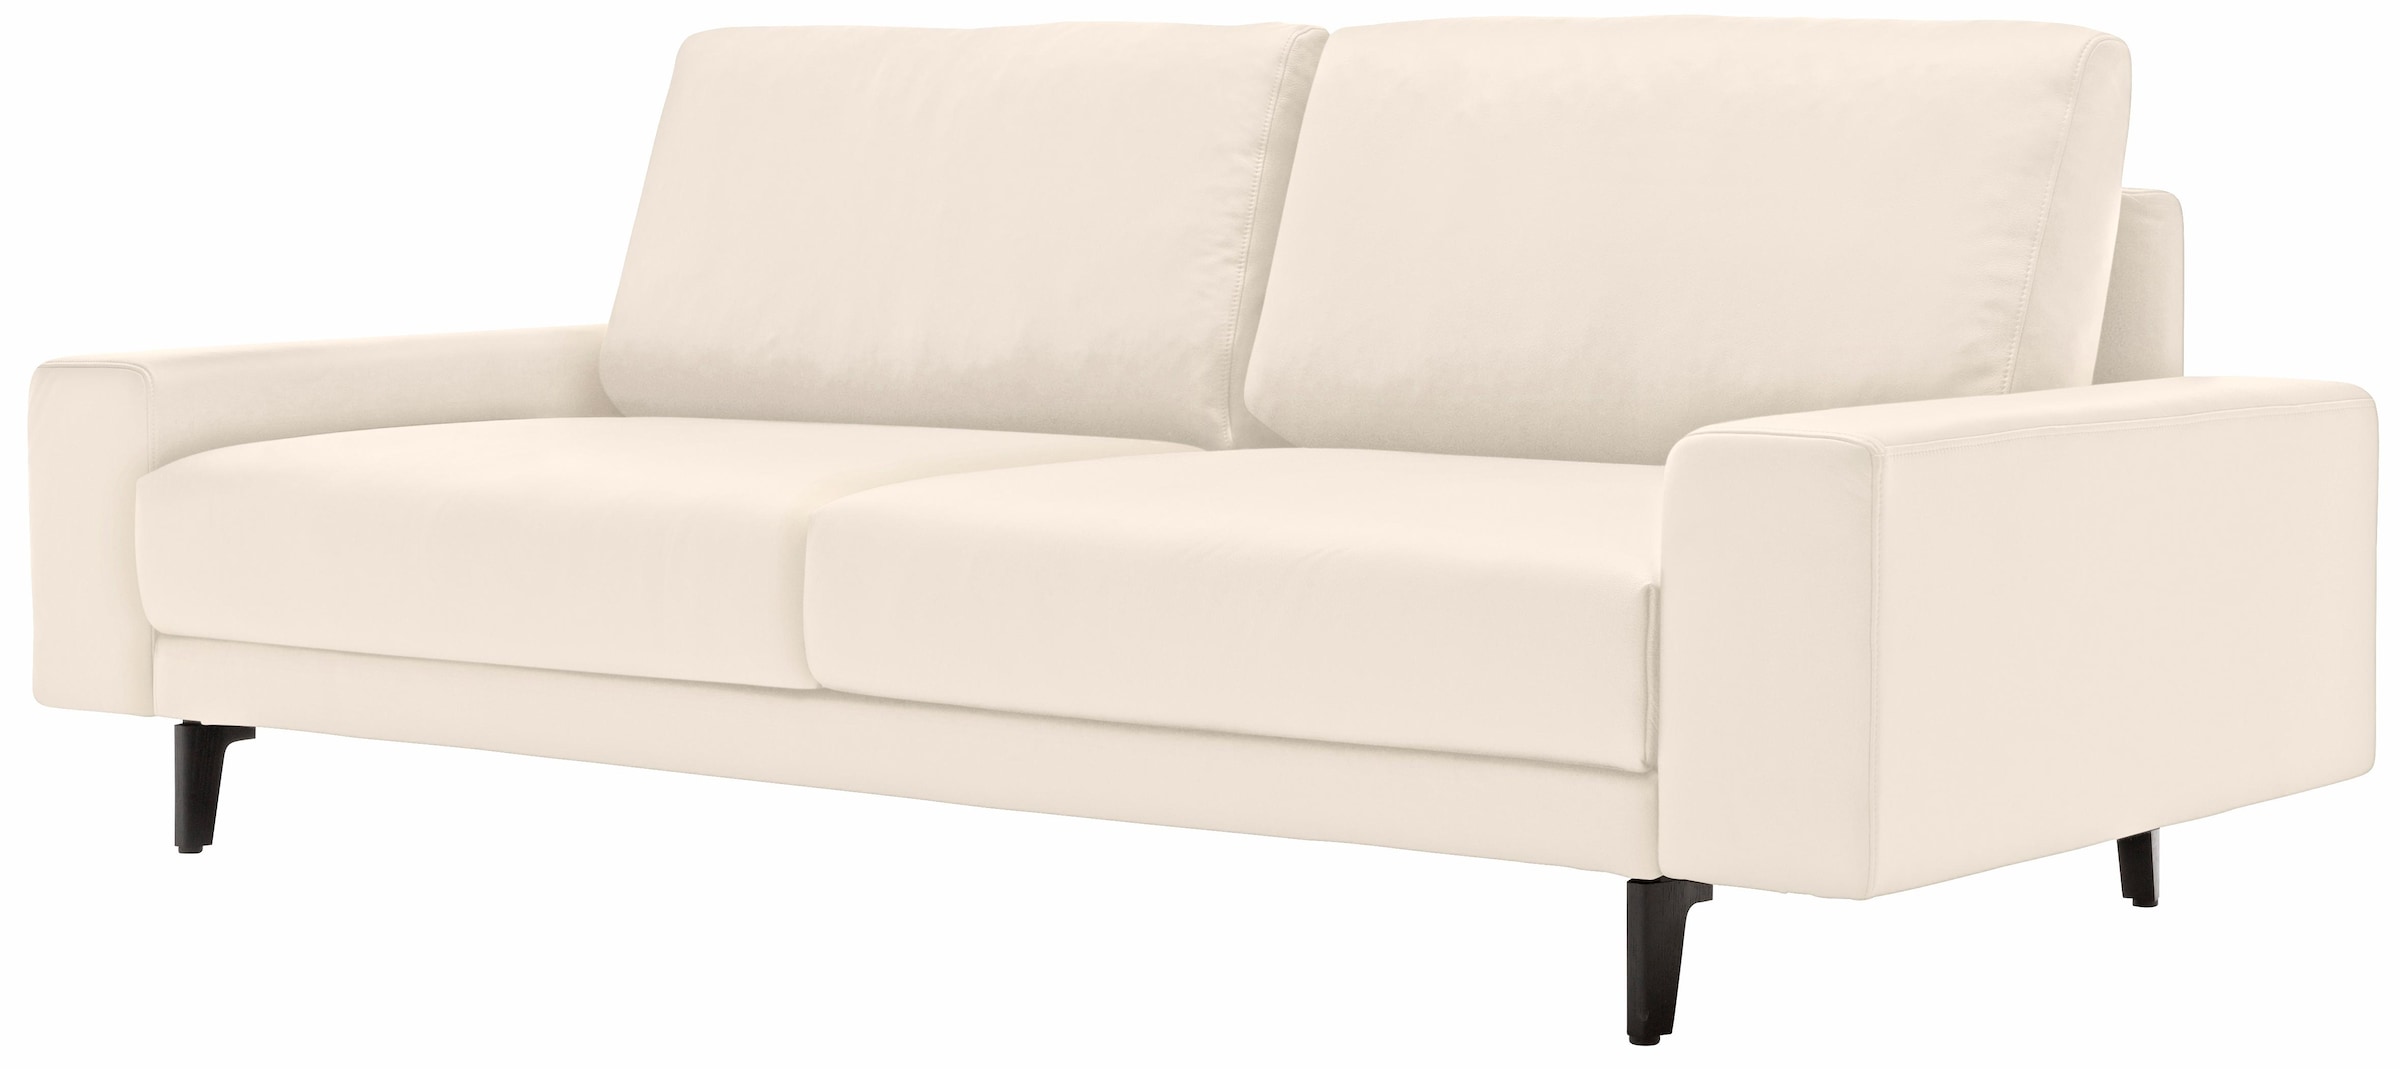 sofa cm bestellen hülsta Alugussfüße Armlehne 2-Sitzer 180 in bequem niedrig, breit umbragrau, »hs.450«, Breite